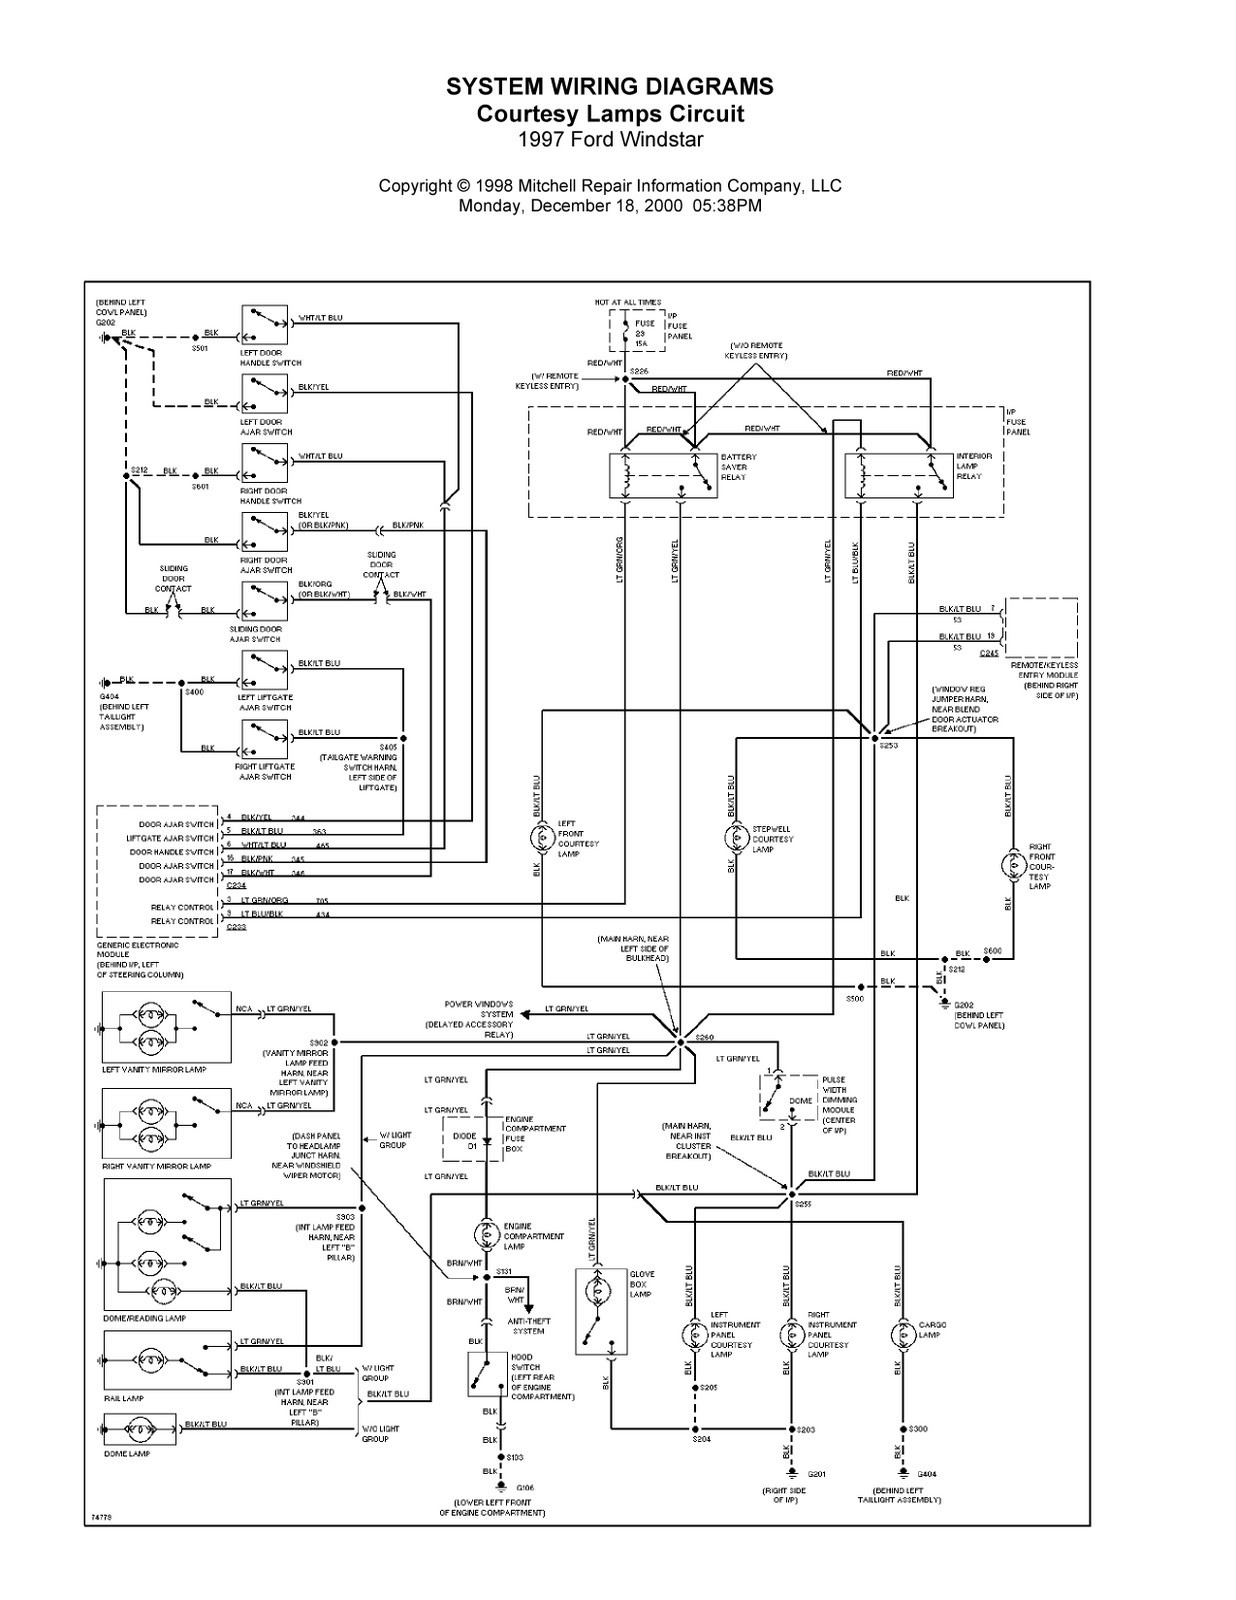 John Deere Ignition Switch Wiring Schematics 4 X 2 Wiring Diagram Rheem Xe10p06pu20uo Wiring Diagram Data Of John Deere Ignition Switch Wiring Schematics 4 X 2